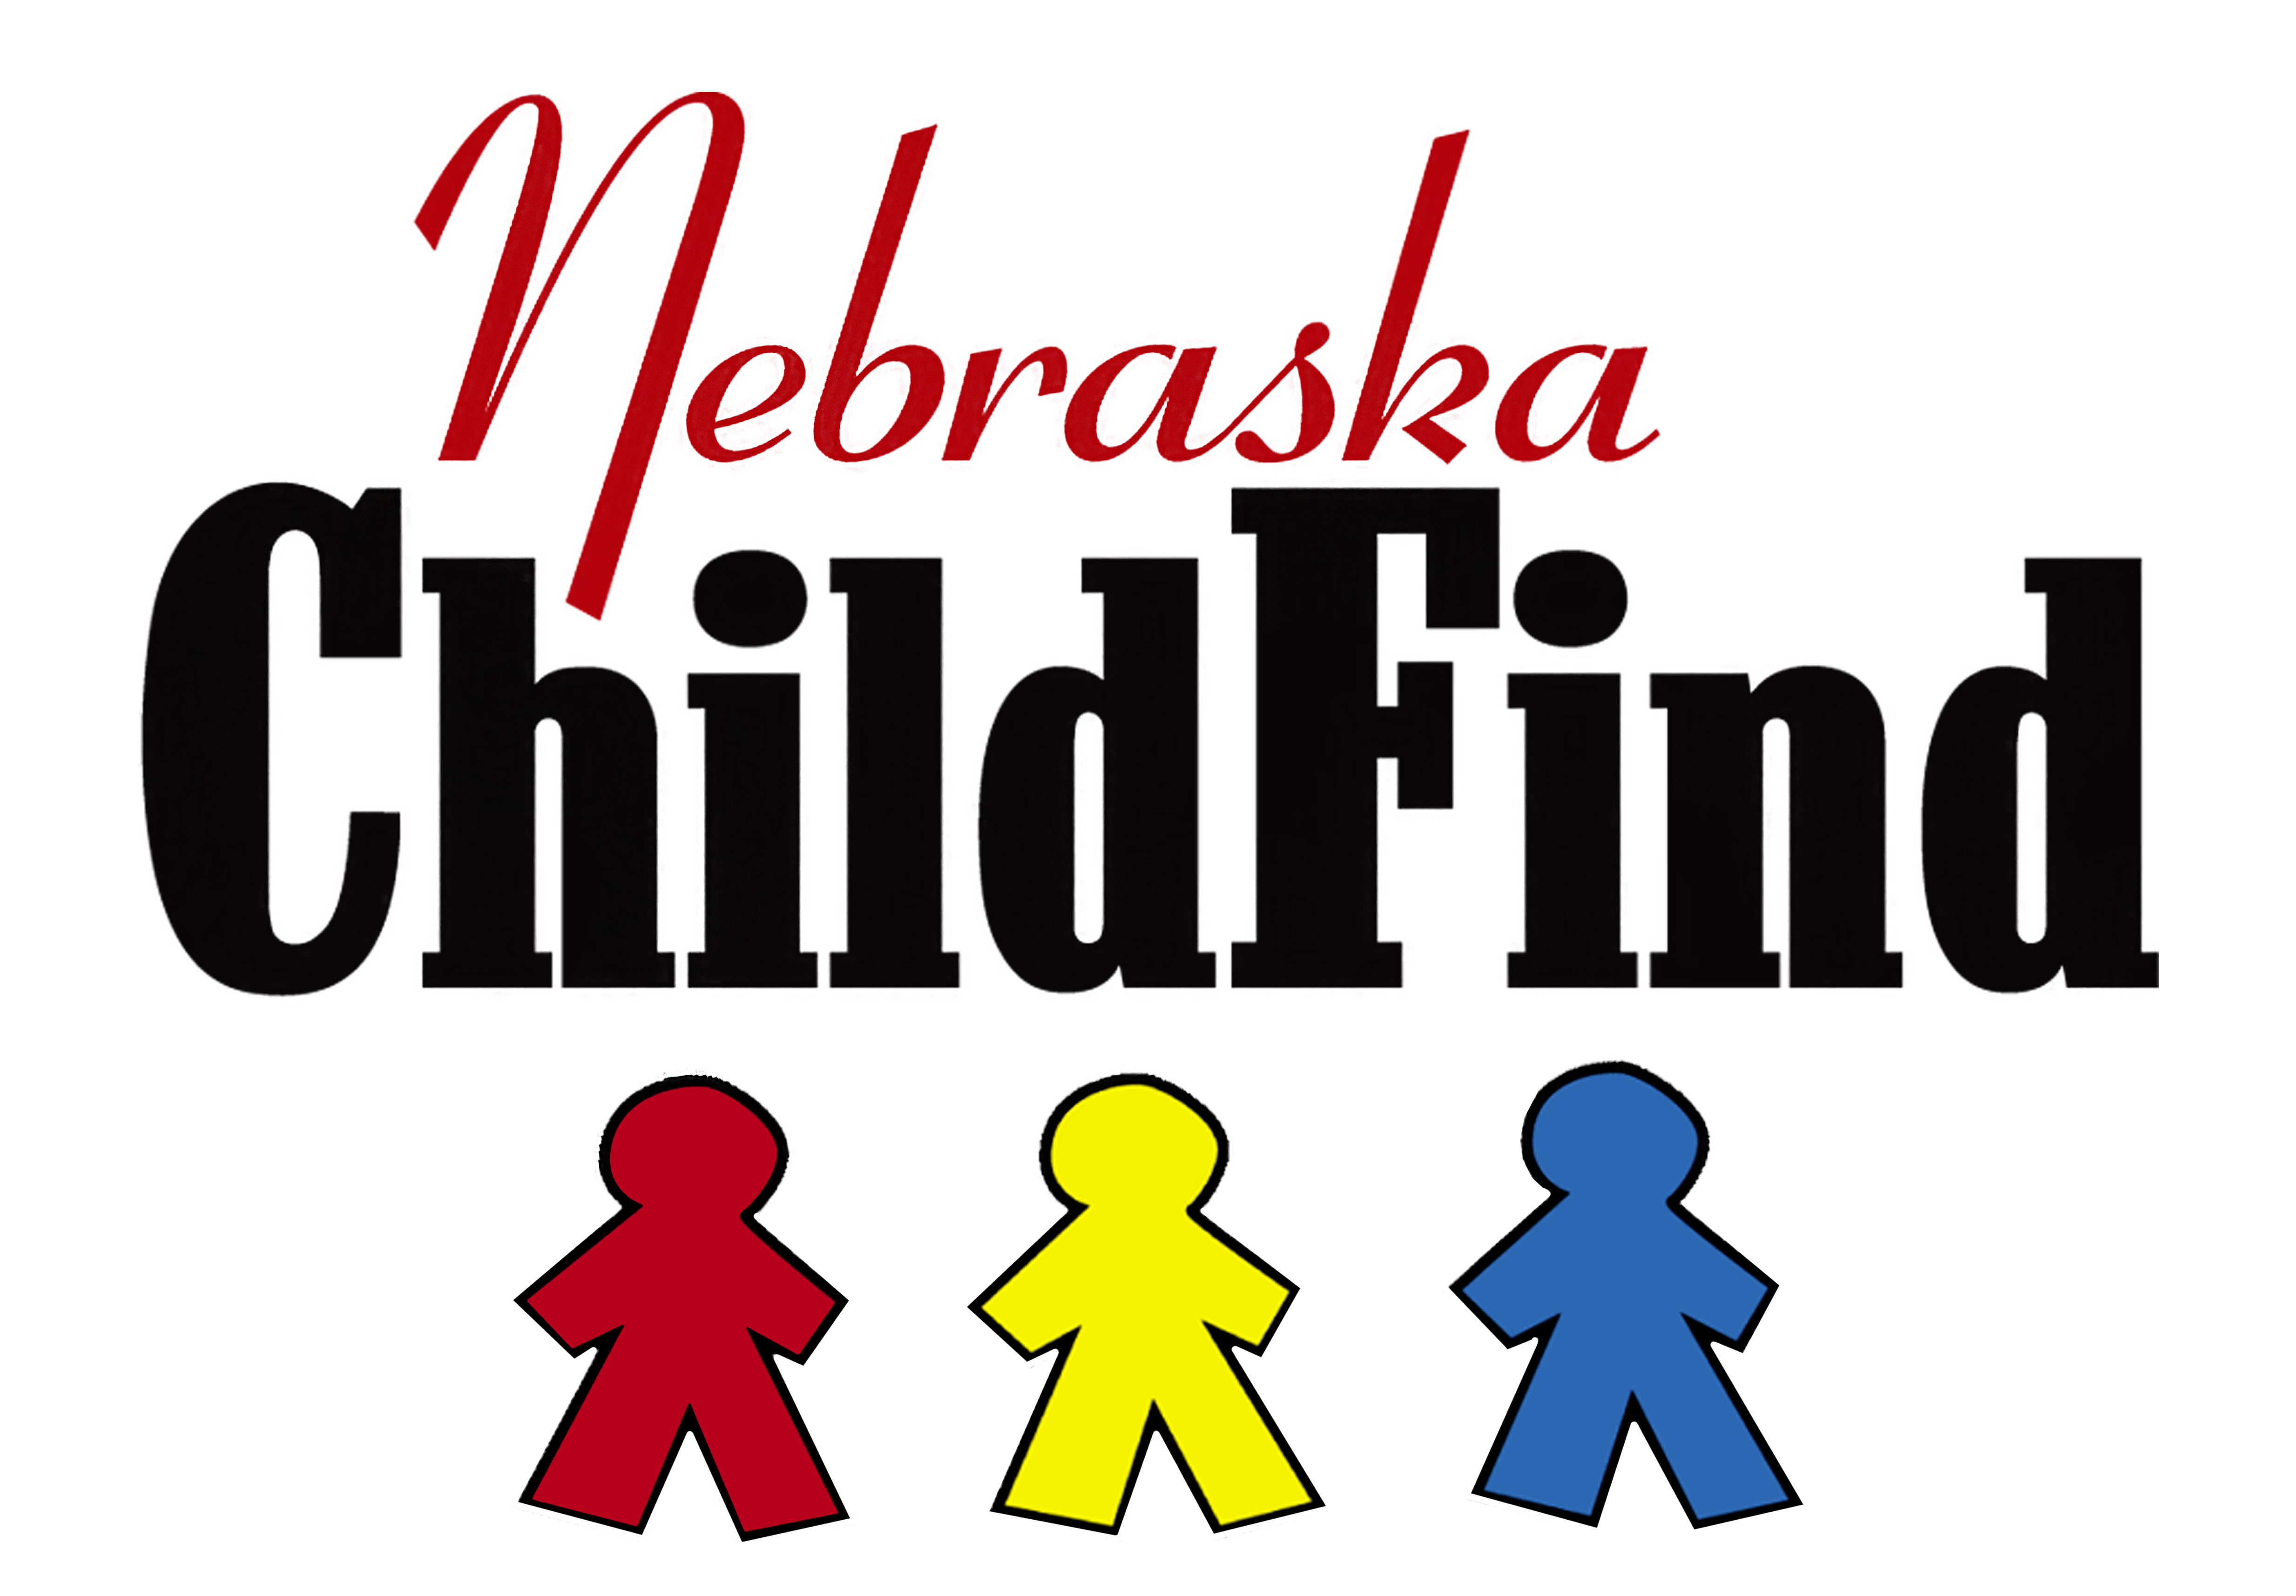 Nebraska ChildFind